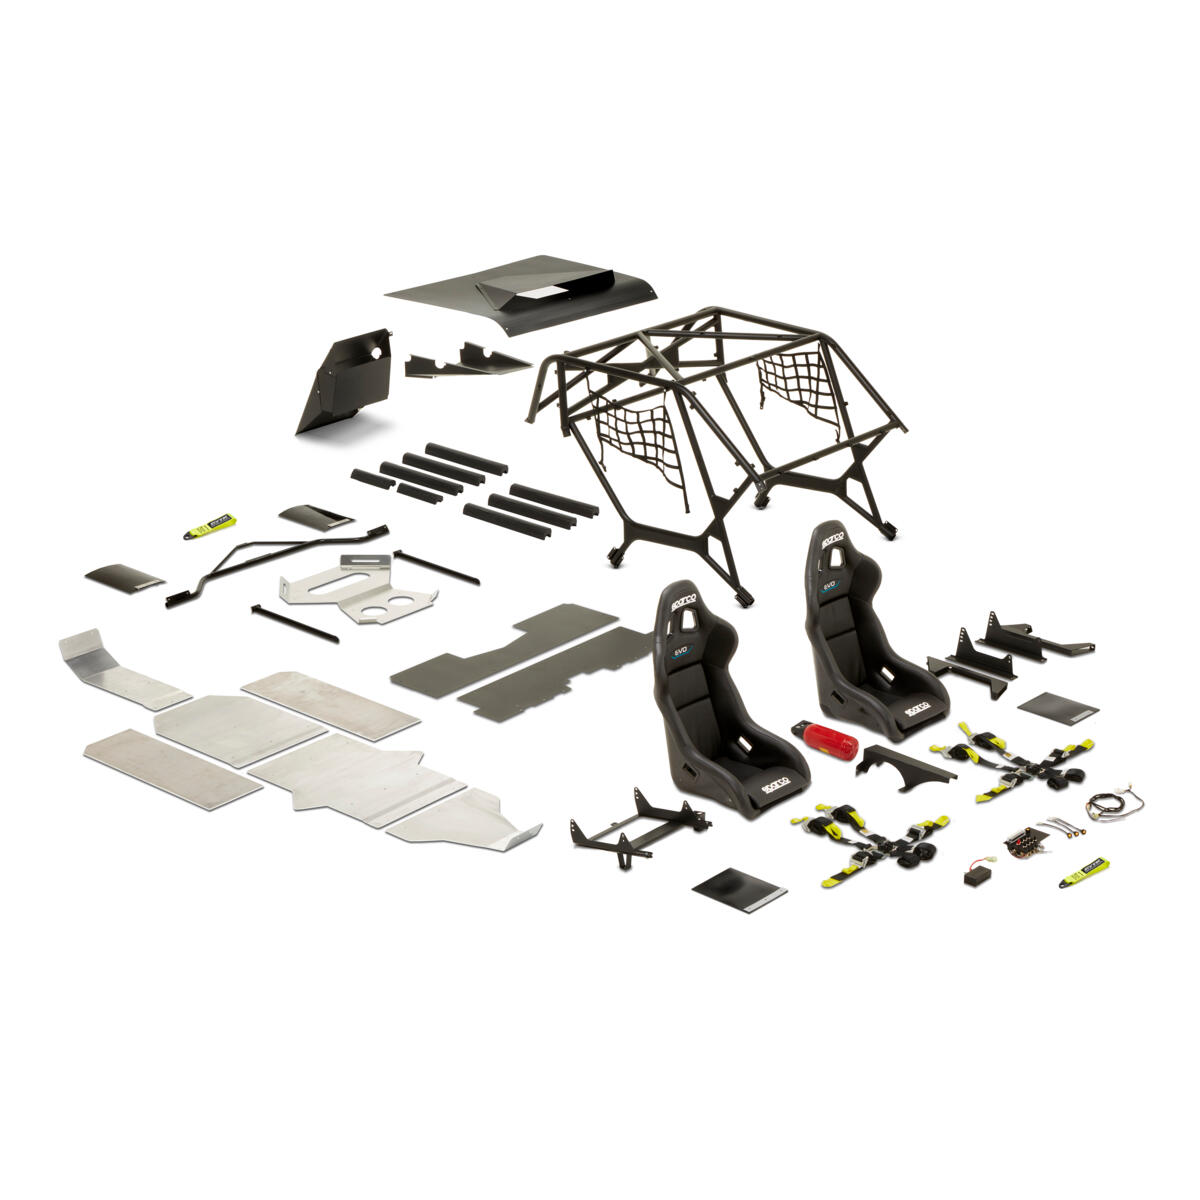 GYTR® Racing Kit steg 1 (fr.o.m. MY19) innehåller all obligatorisk utrustning baserat på FIA T4-bestämmelserna (Fédération Internationale de l'Automobile) för Side-by-Side-fordon. Med det här kitet är YXZ1000R redo att tävla i de flesta tävlingar som körs under nationella sportmyndigheter och FIM.

Tack vare plug-and-play-konstruktionen krävs ingen svetsning eller modifiering av chassit. Med hjälp av monteringsanvisningarna kan alla Yamaha SSV-återförsäljare eller erfarna mekaniker slutföra installationen på ca 16 timmar.
GYTR Racing Kit öppnar en ny värld av racing och ger en stark bas för ytterligare förbättring av färdigheter och fordonsprestanda, både för nybörjare och erfarna förare.

Det här steg 1-kitet är utvecklat för modeller med bakmonterad kylare och passar för YXZ1000R-modeller från och med MY2019.


Kitet innehåller: